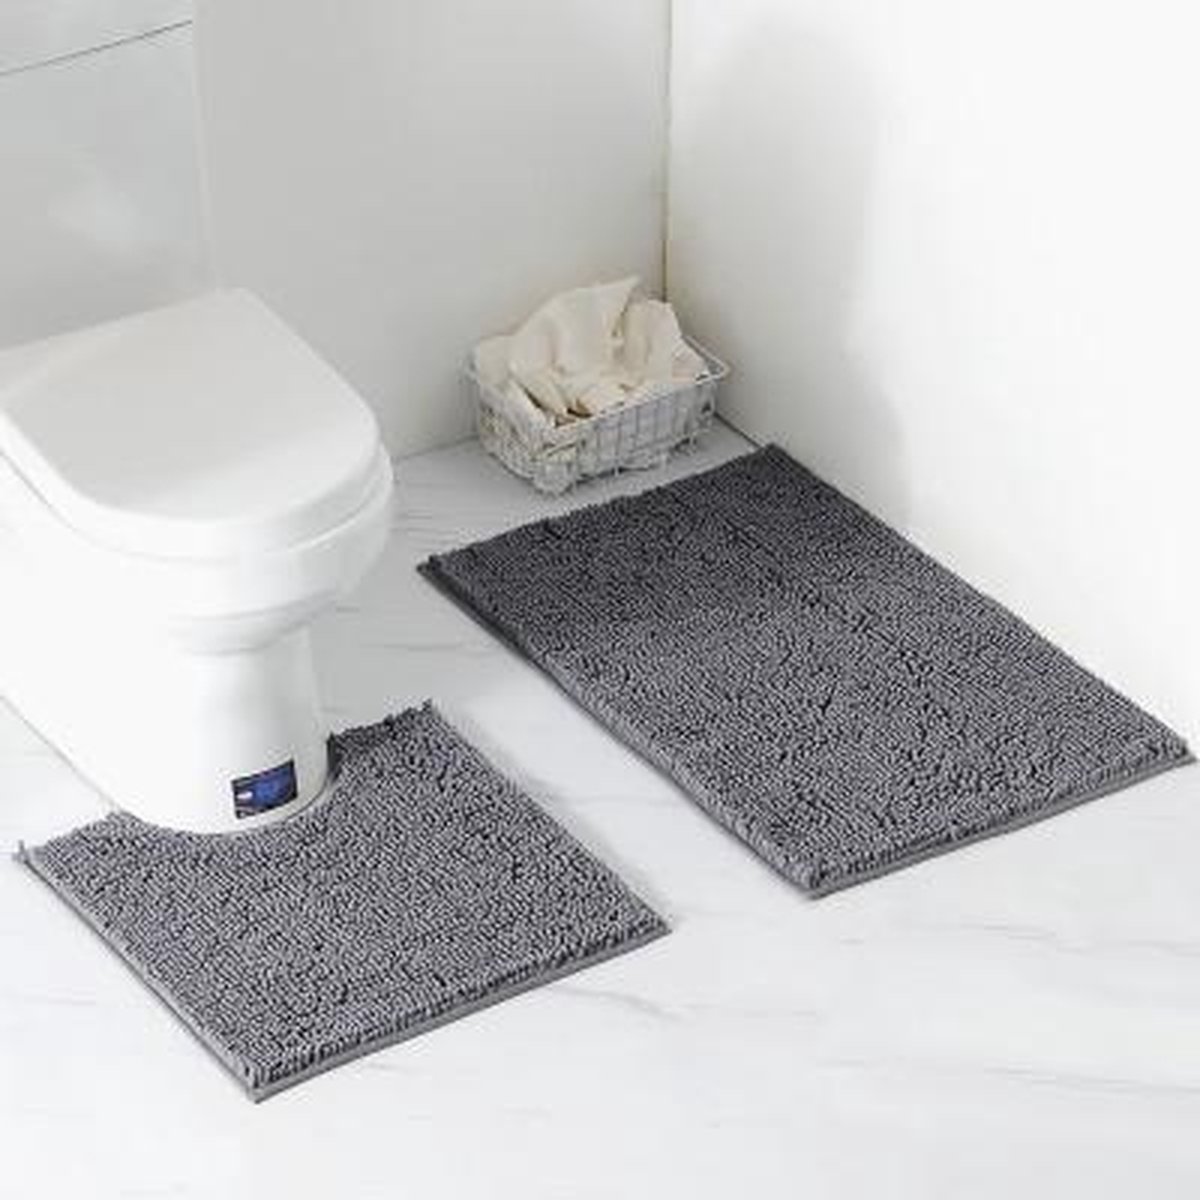 Binnenshuis Aanpassing Verkeerd Badkamer matten set (2 stuks) - Verkrijgbaar in verschillende kleuren -  Donkergrijs | bol.com